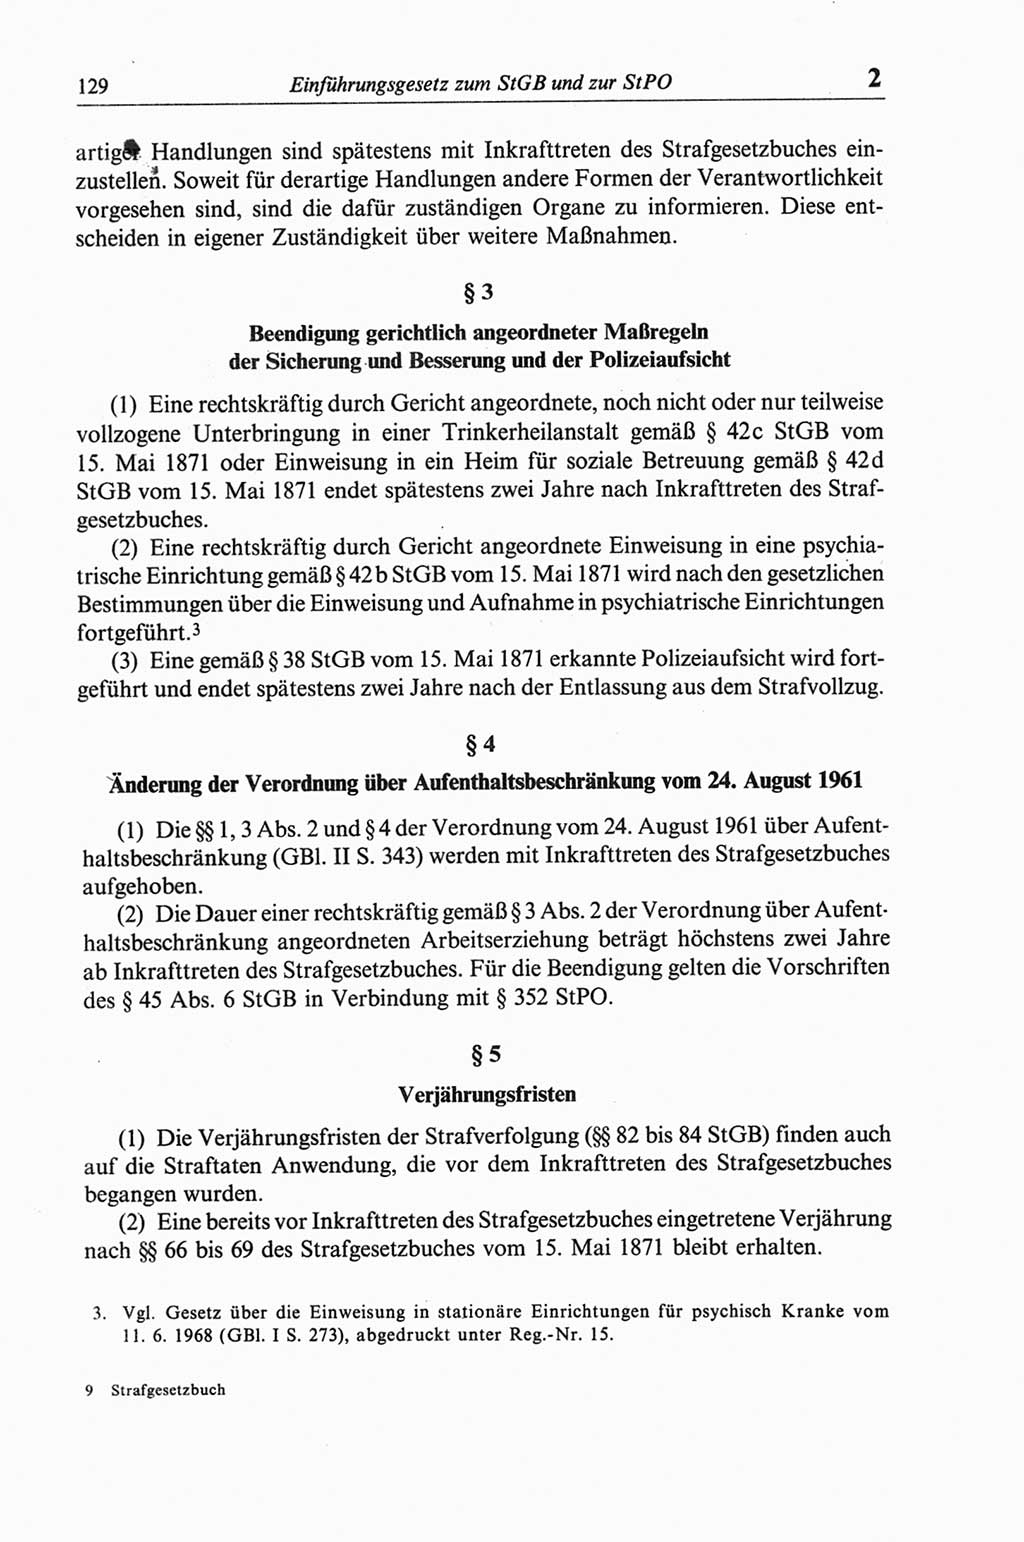 Strafgesetzbuch (StGB) der Deutschen Demokratischen Republik (DDR) und angrenzende Gesetze und Bestimmungen 1968, Seite 129 (StGB Ges. Best. DDR 1968, S. 129)